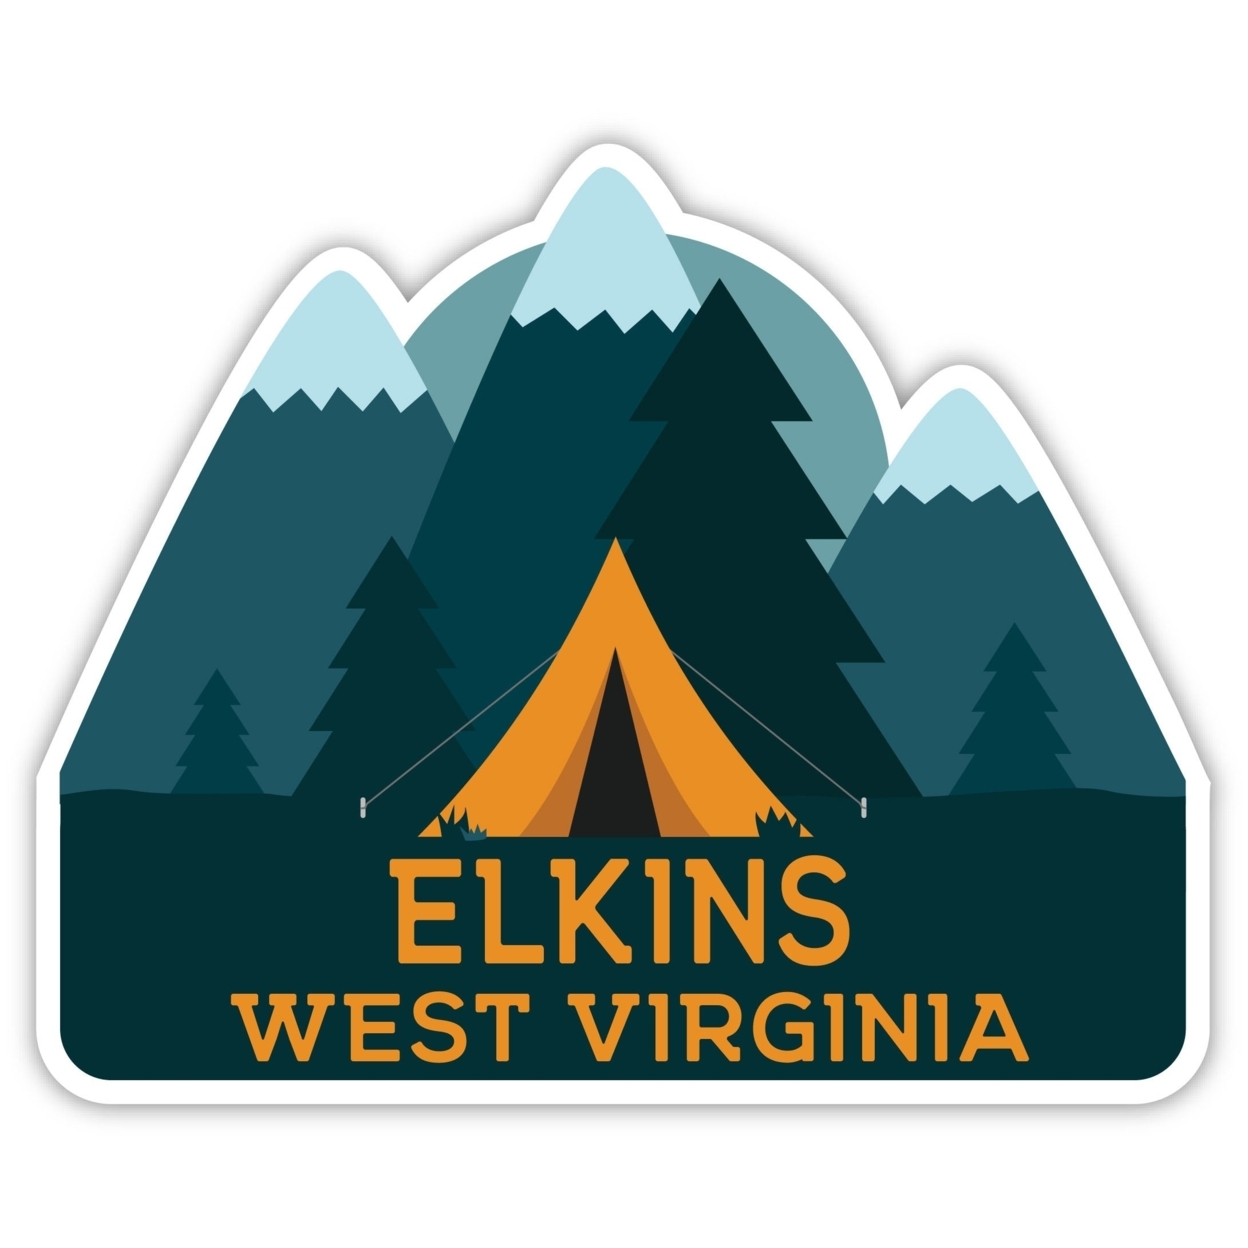 Elkins West Virginia Souvenir Decorative Stickers (Choose Theme And Size) - Single Unit, 4-Inch, Tent